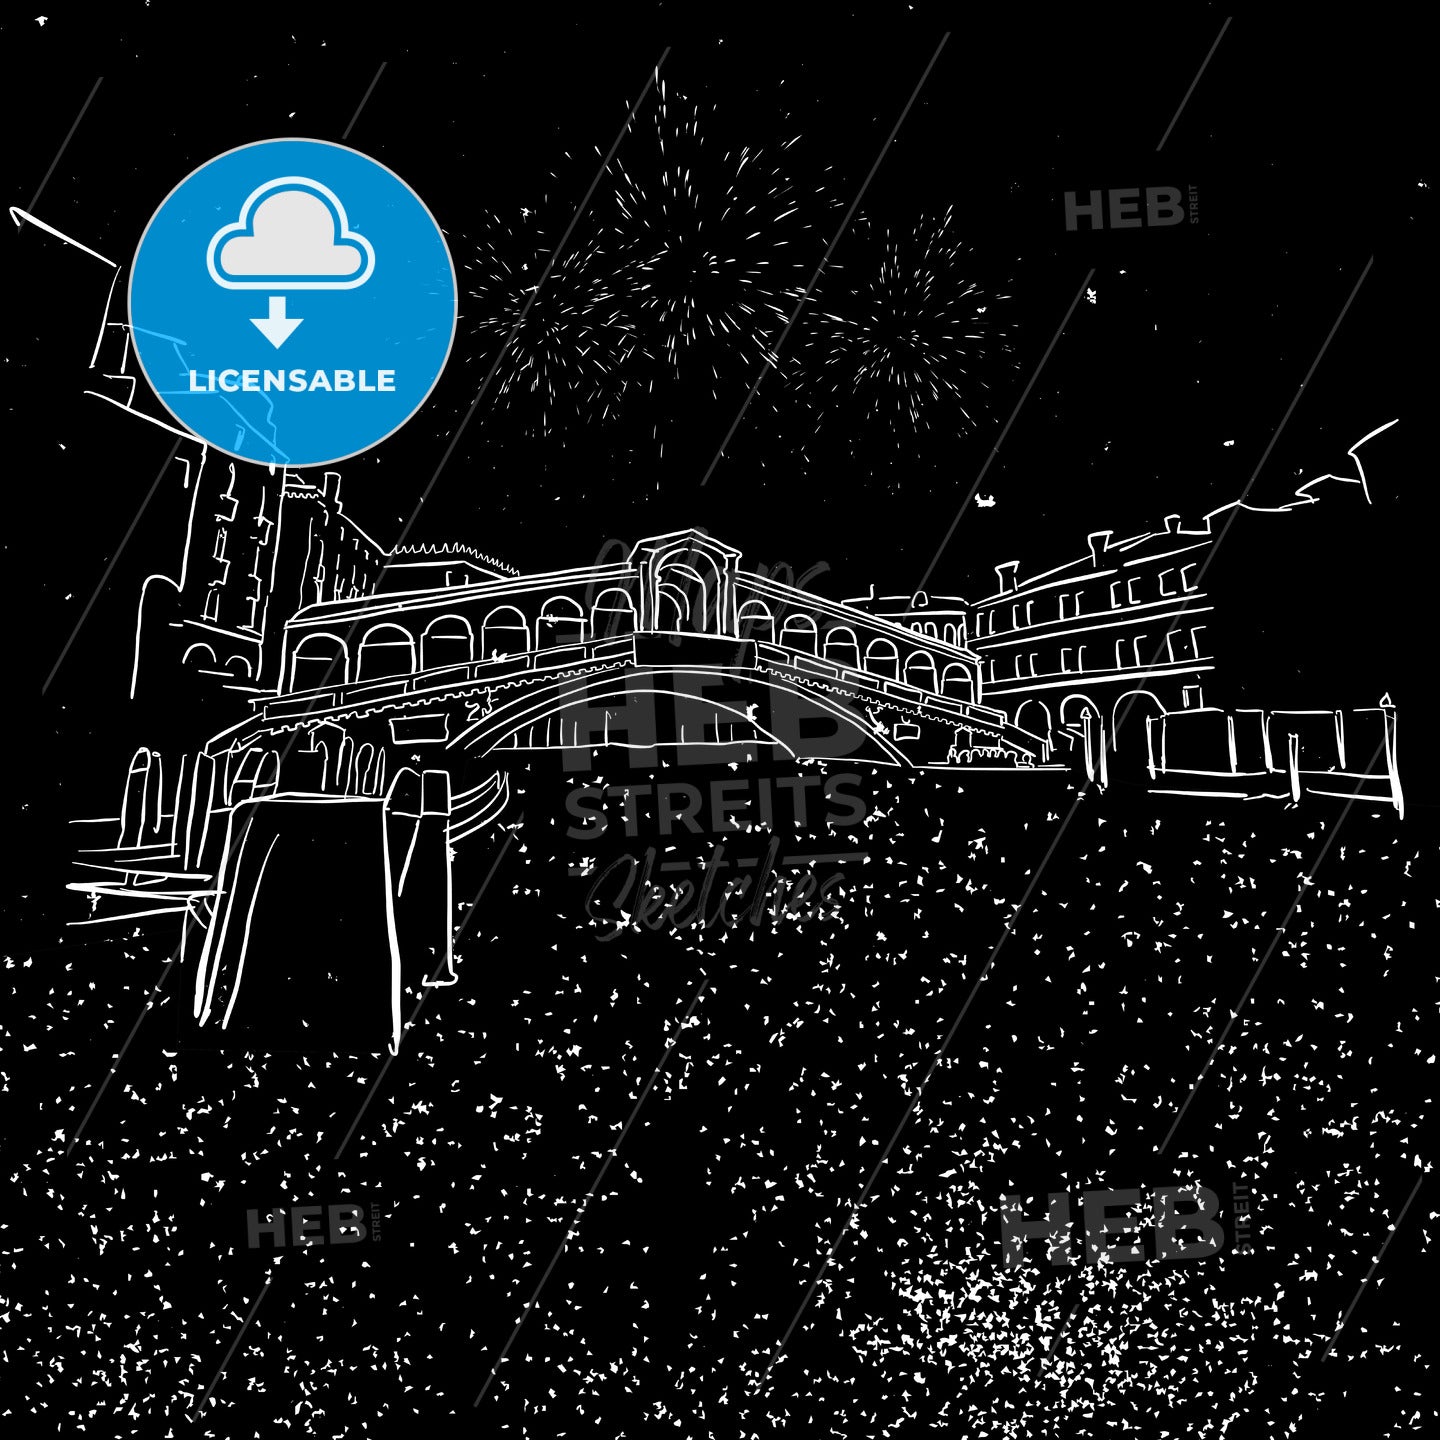 venezia Rialtor Bridge by Night Sketch – instant download